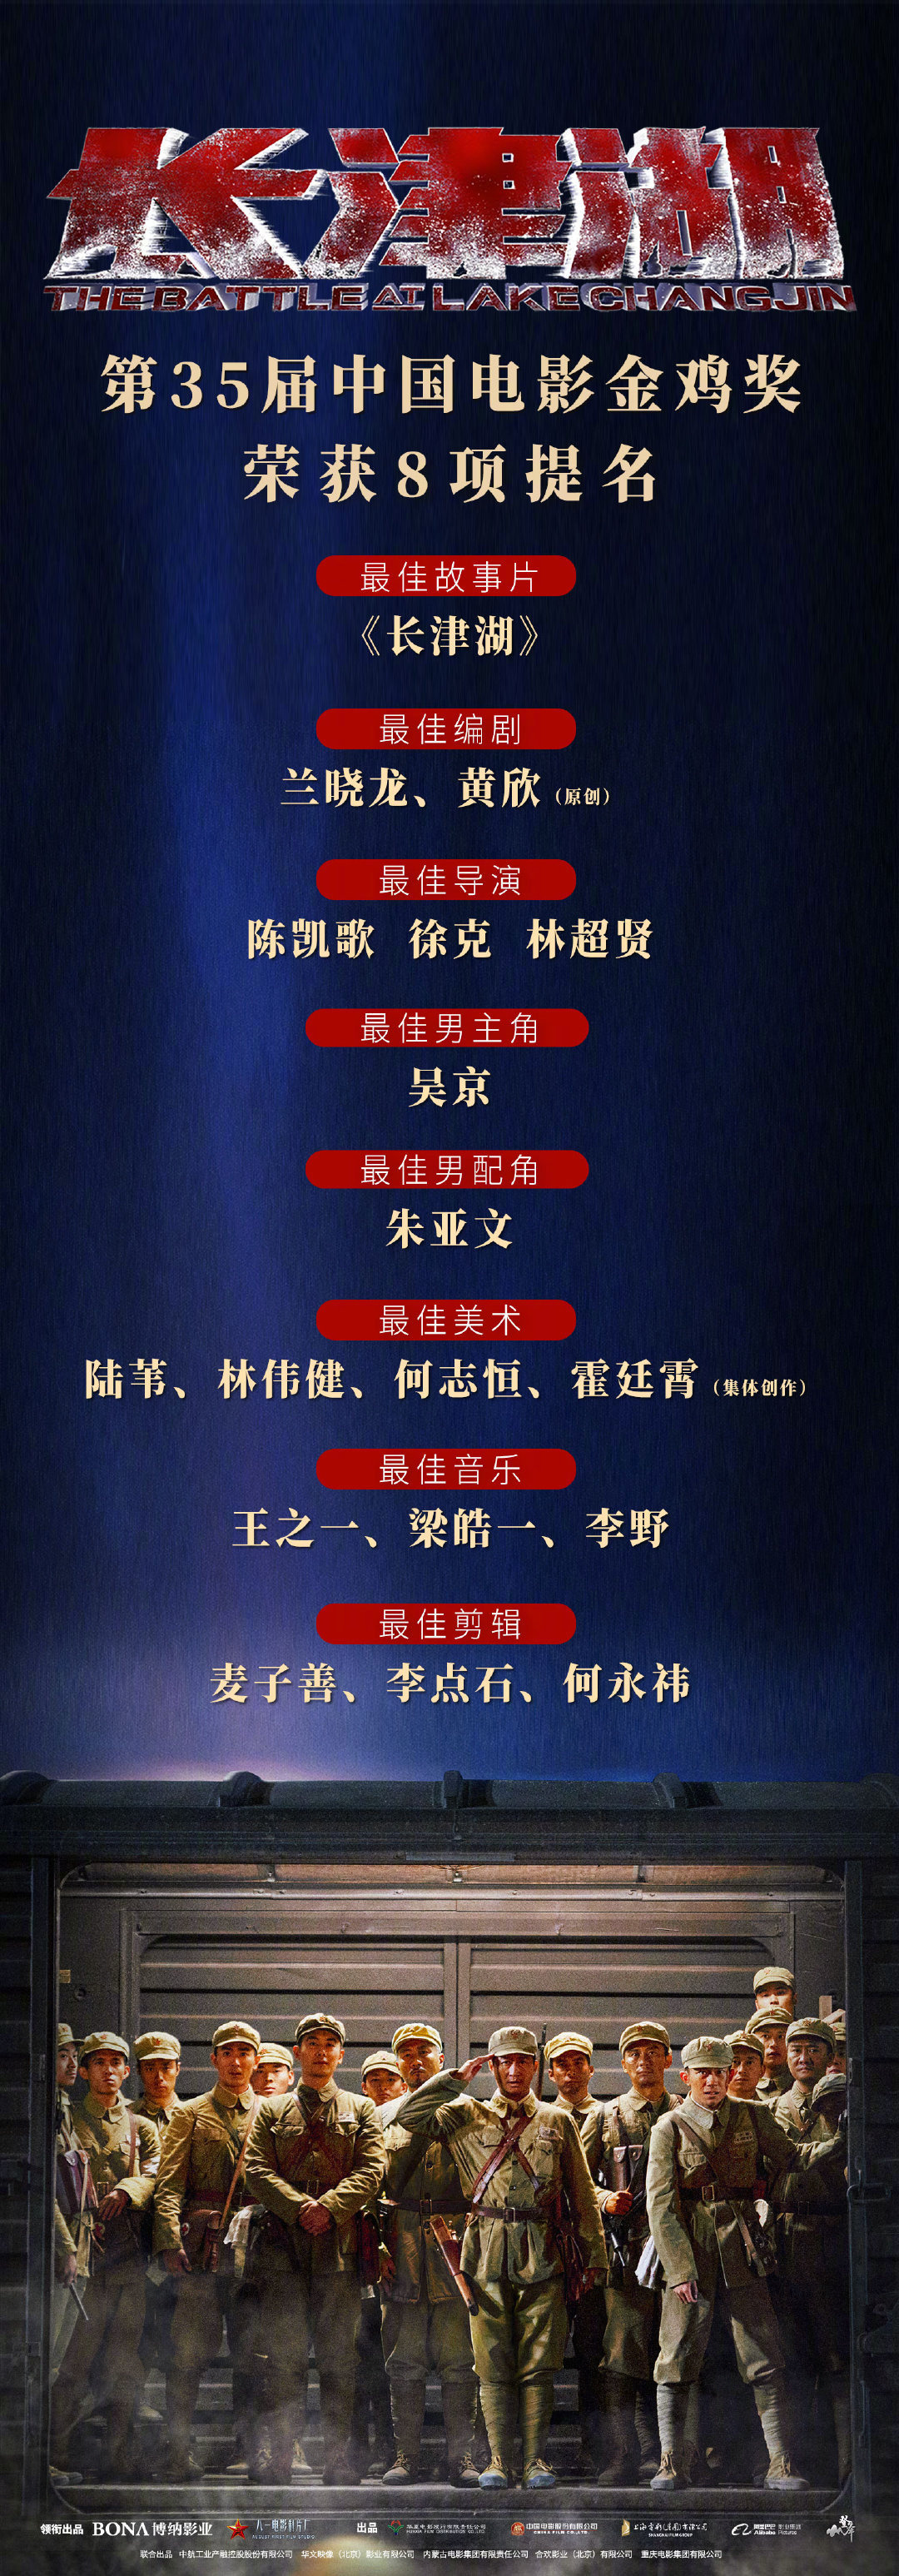 速览！第35届中国电影金鸡奖提名影片成绩单海报(吴奇隆召唤神龙的电影)